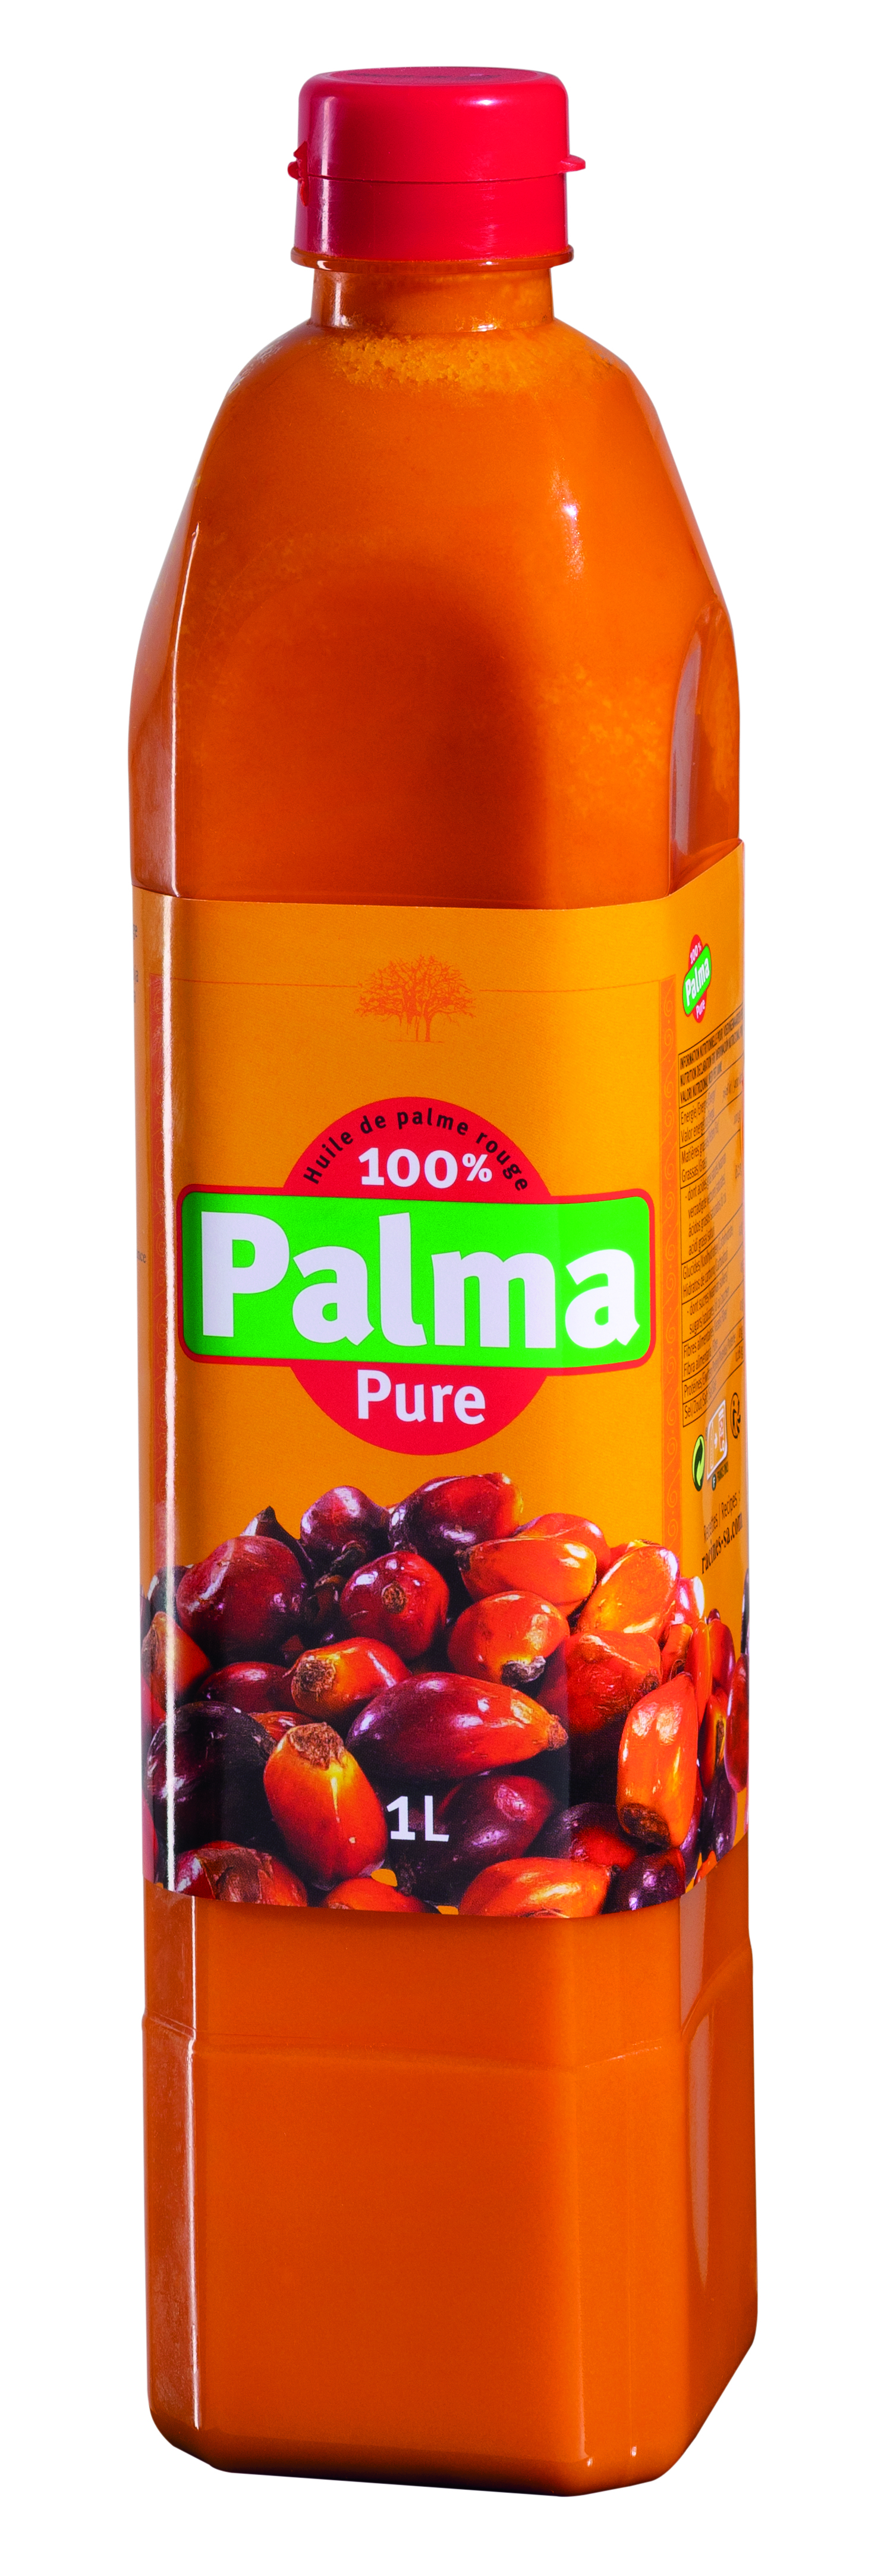 帕尔马红棕榈油 (12 X 100 Cl) - PALMA